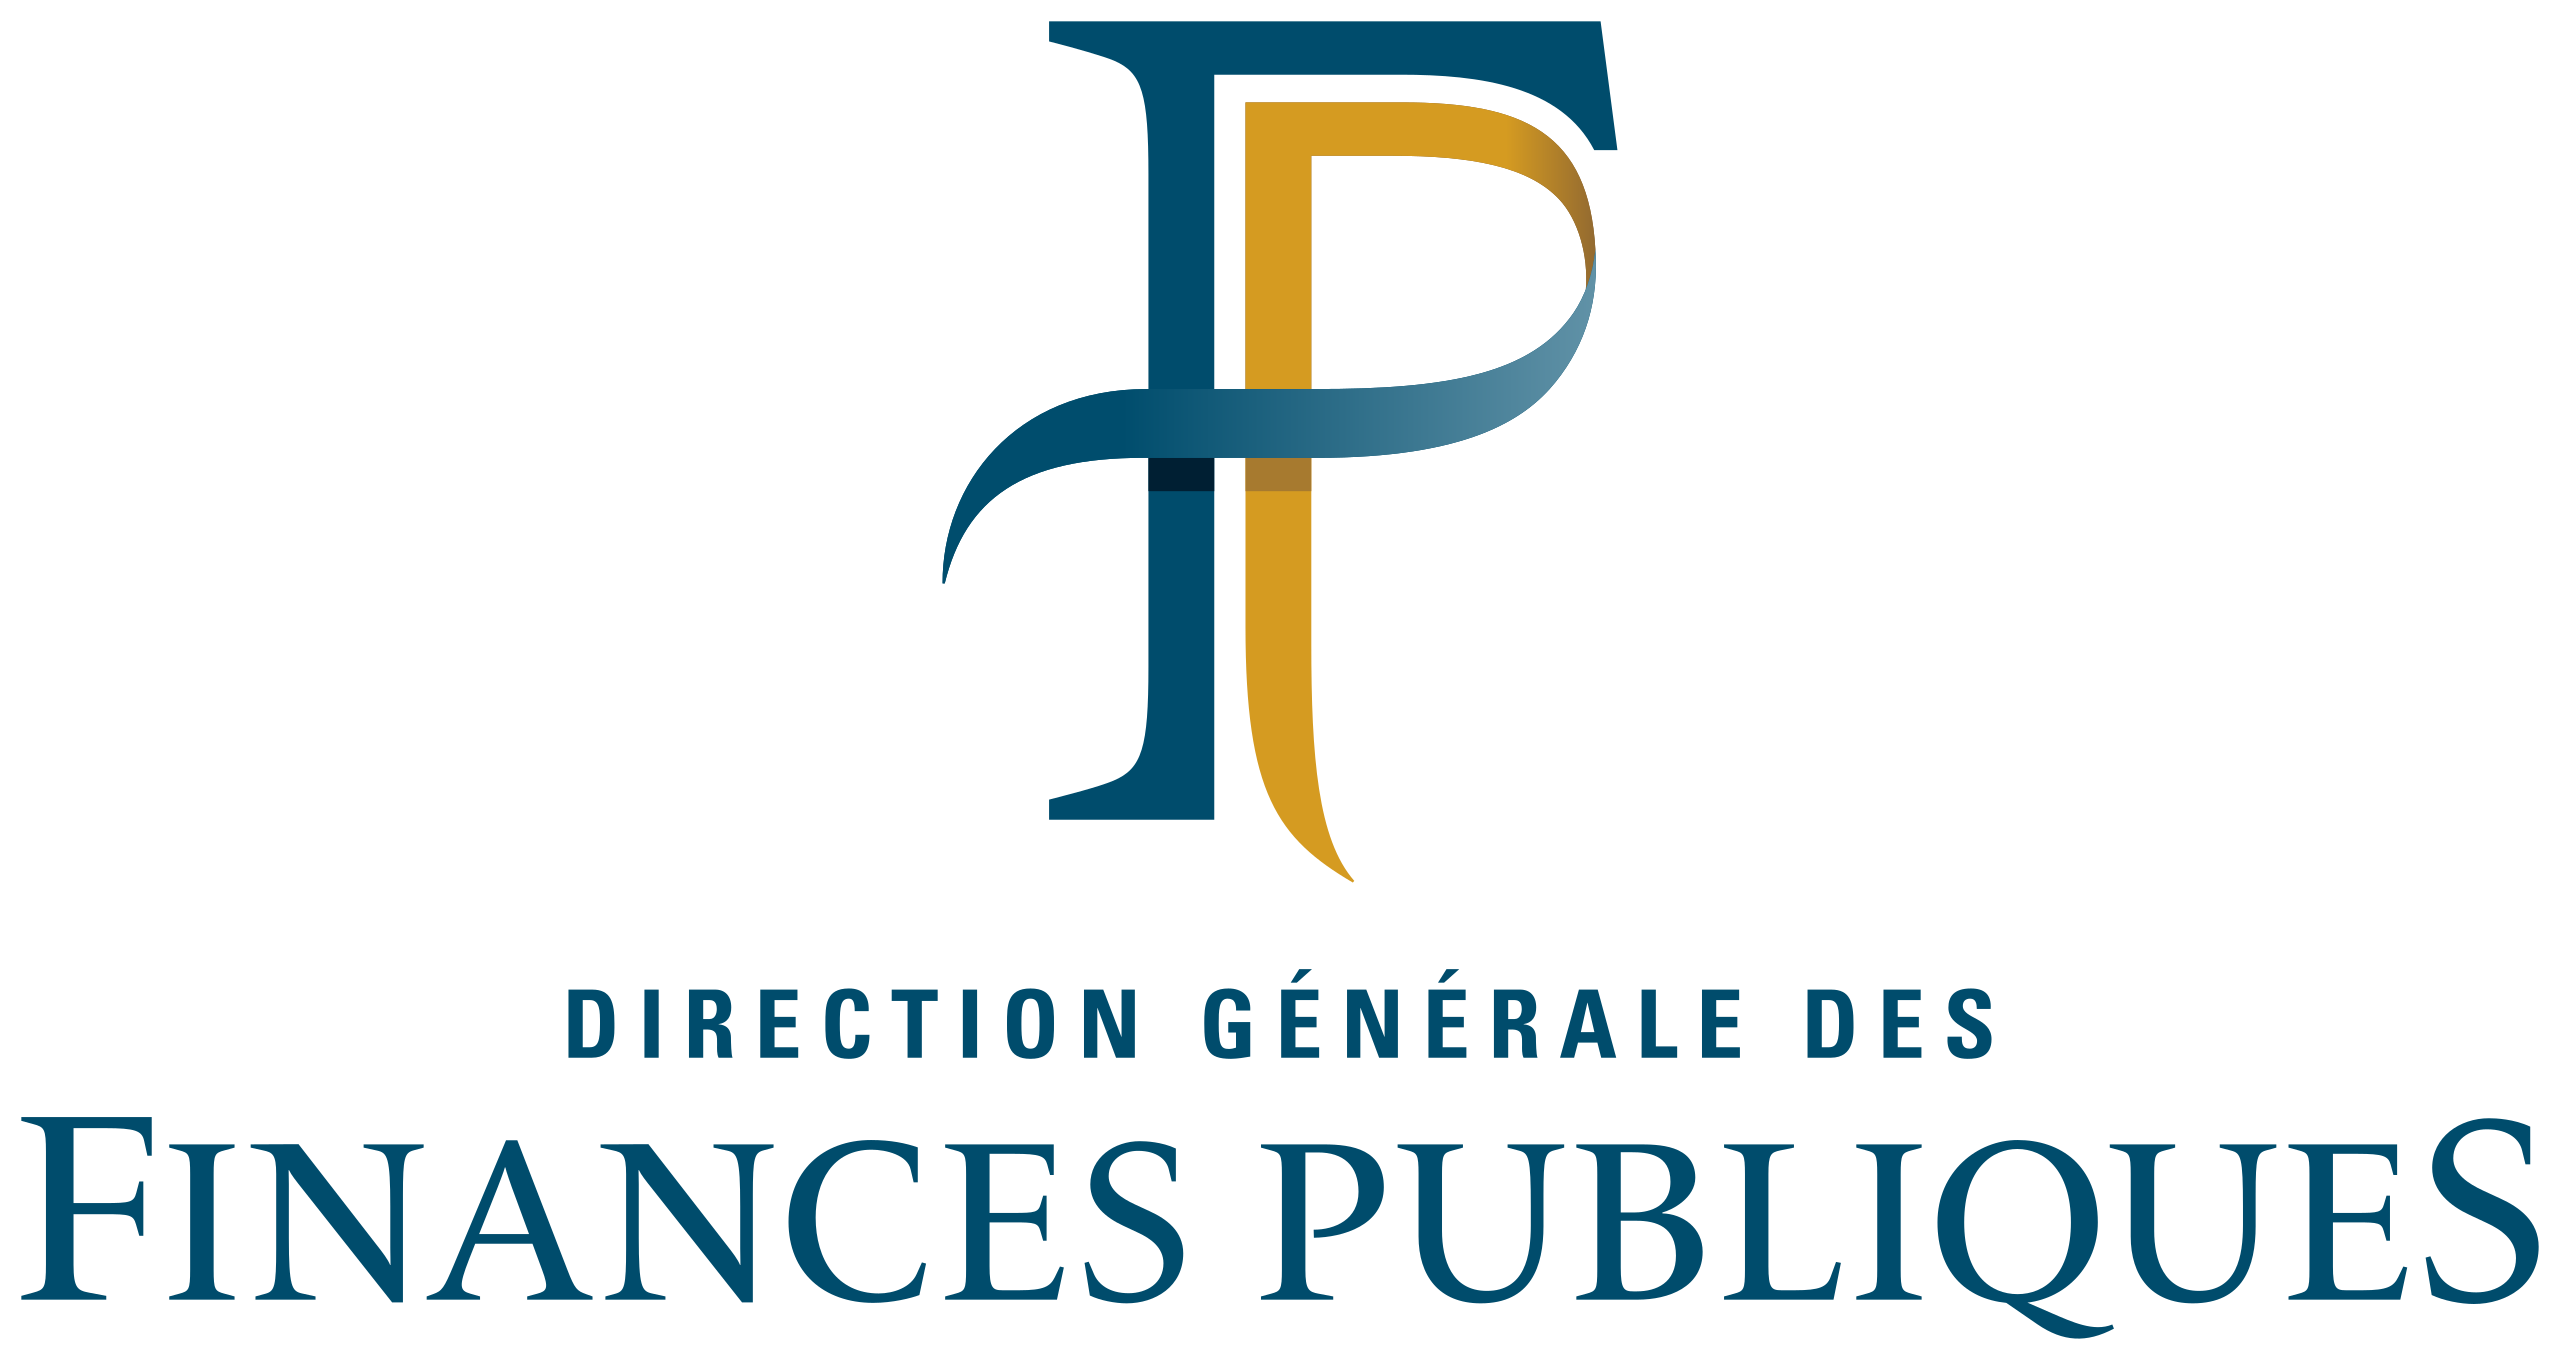 Official logo of the France DGFiP (Direction Générale des Finances Publiques)